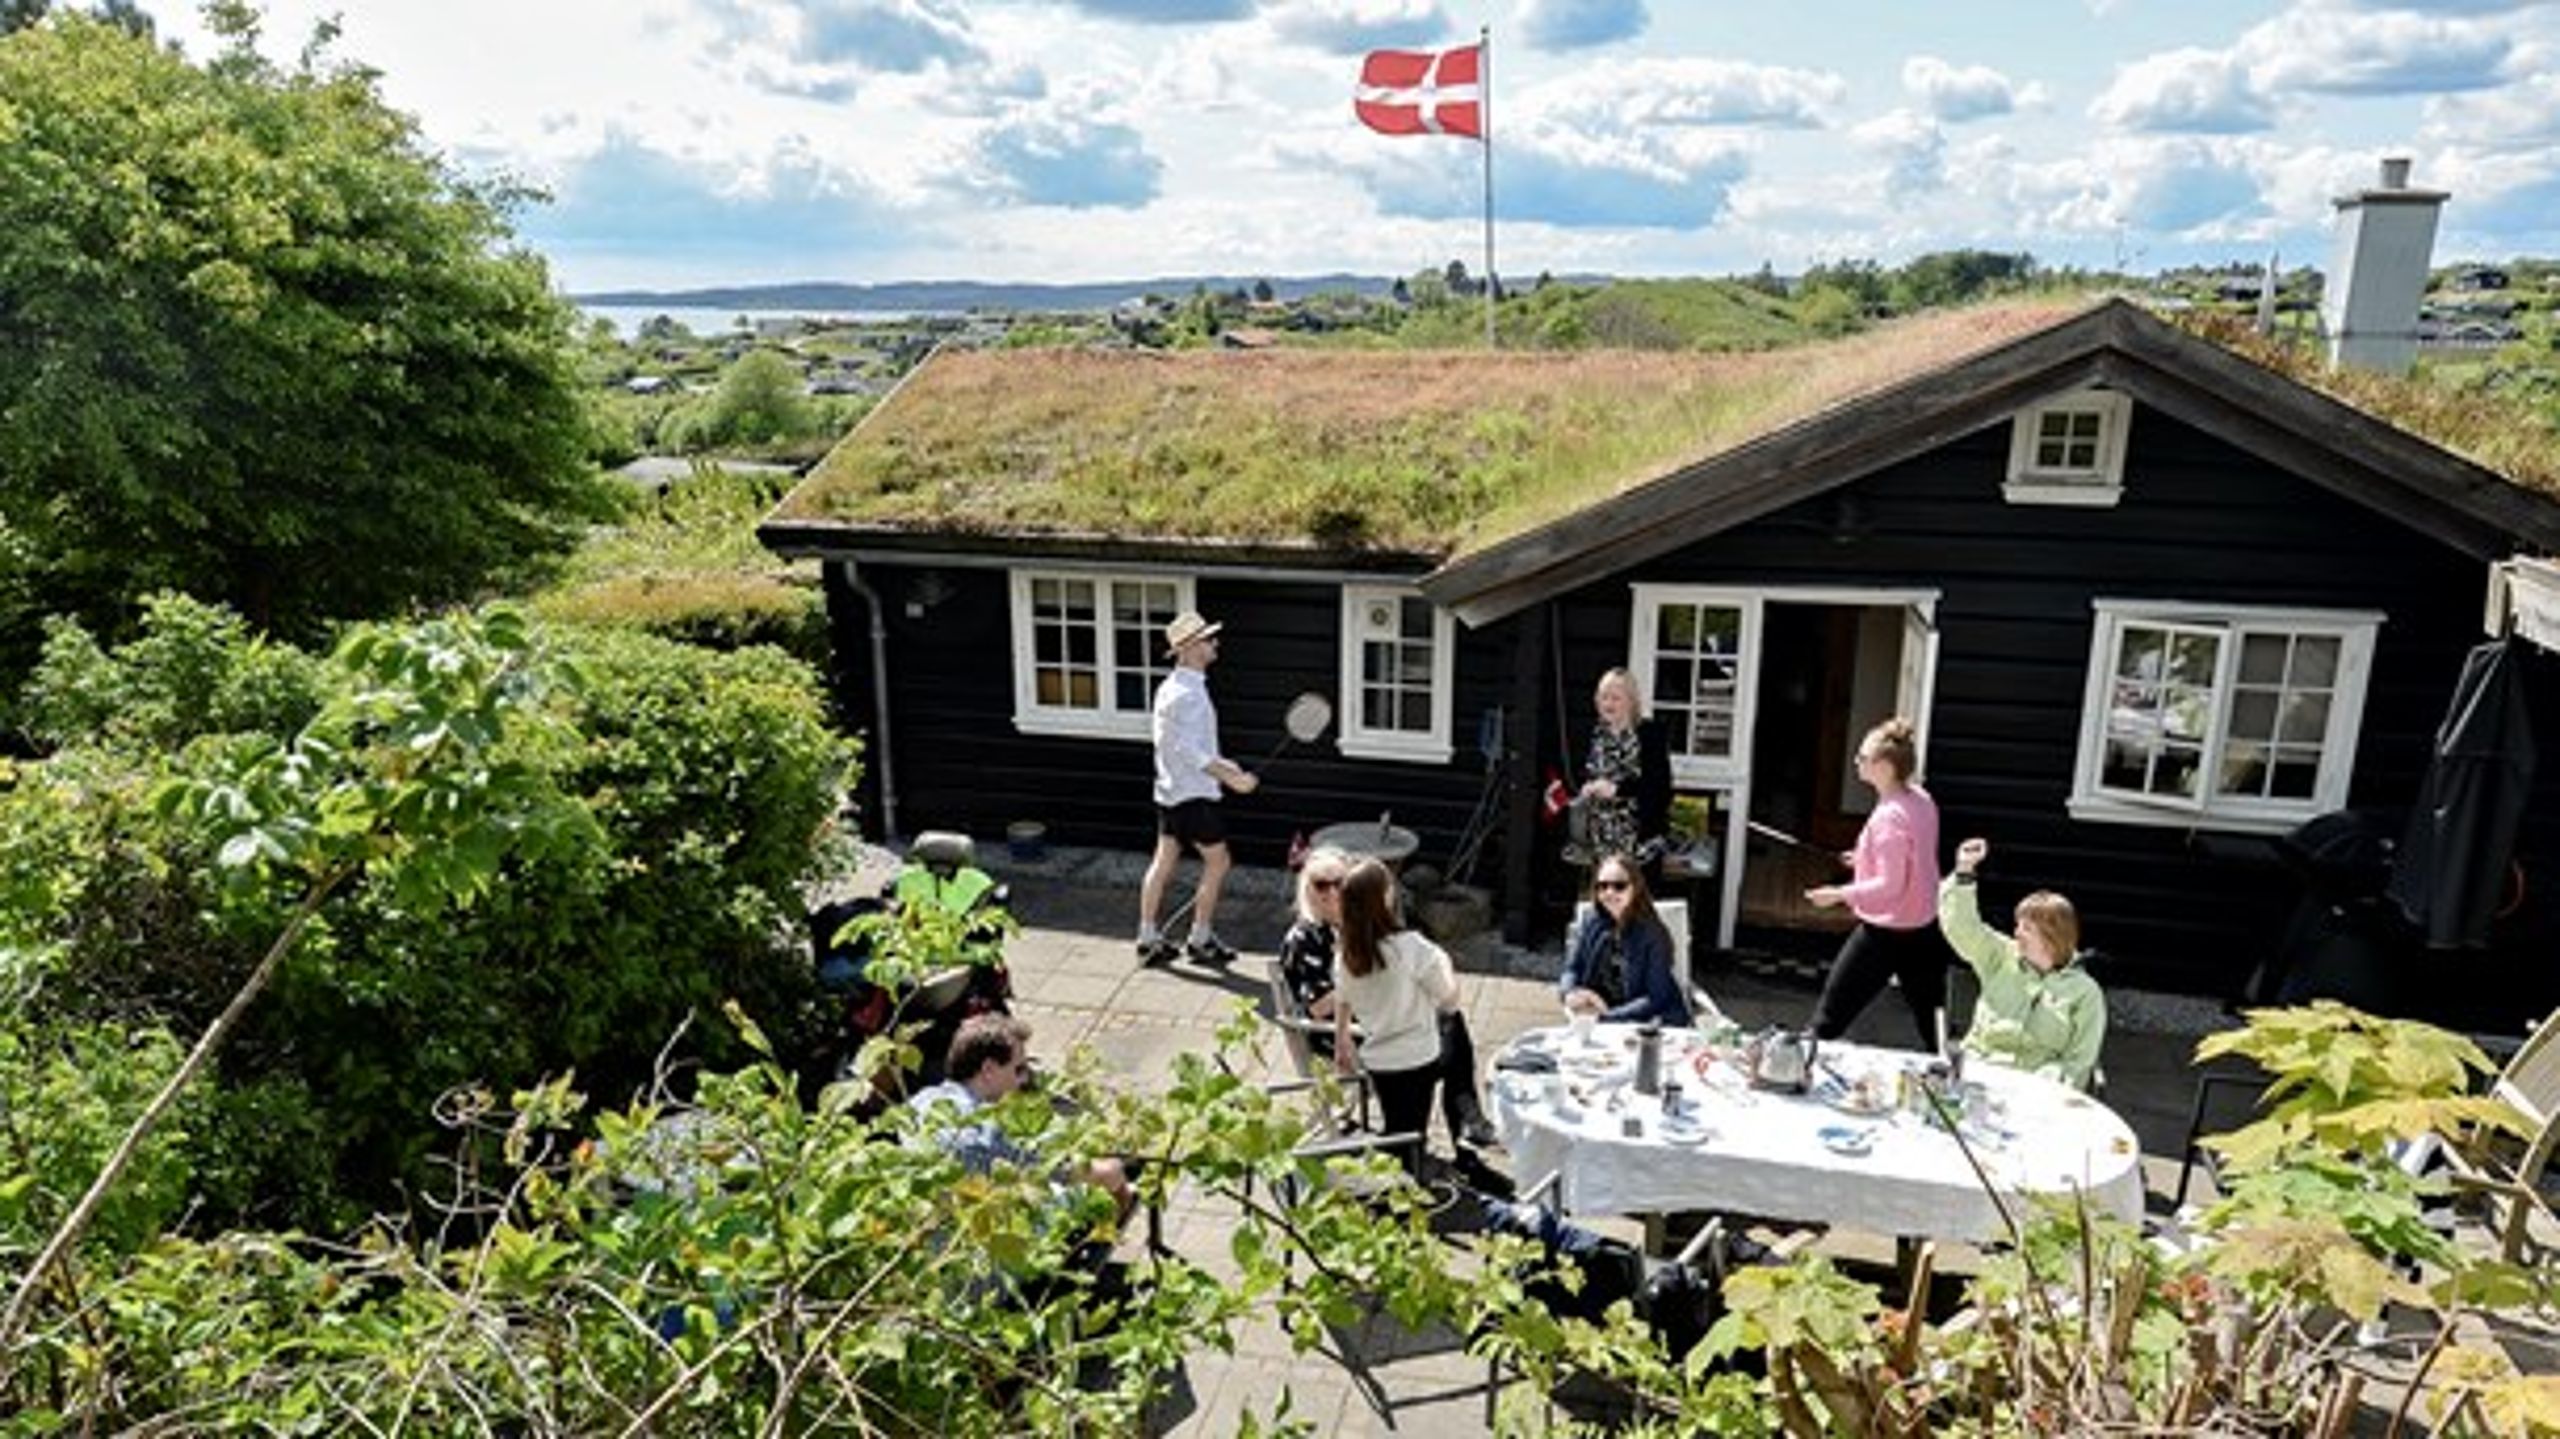 Hvis danskerne i højere grad vælger feriefornøjelser inden for landets grænser, er det til gavn for mere end bare den danske turistbranche, skriver Horestas miljøchef.